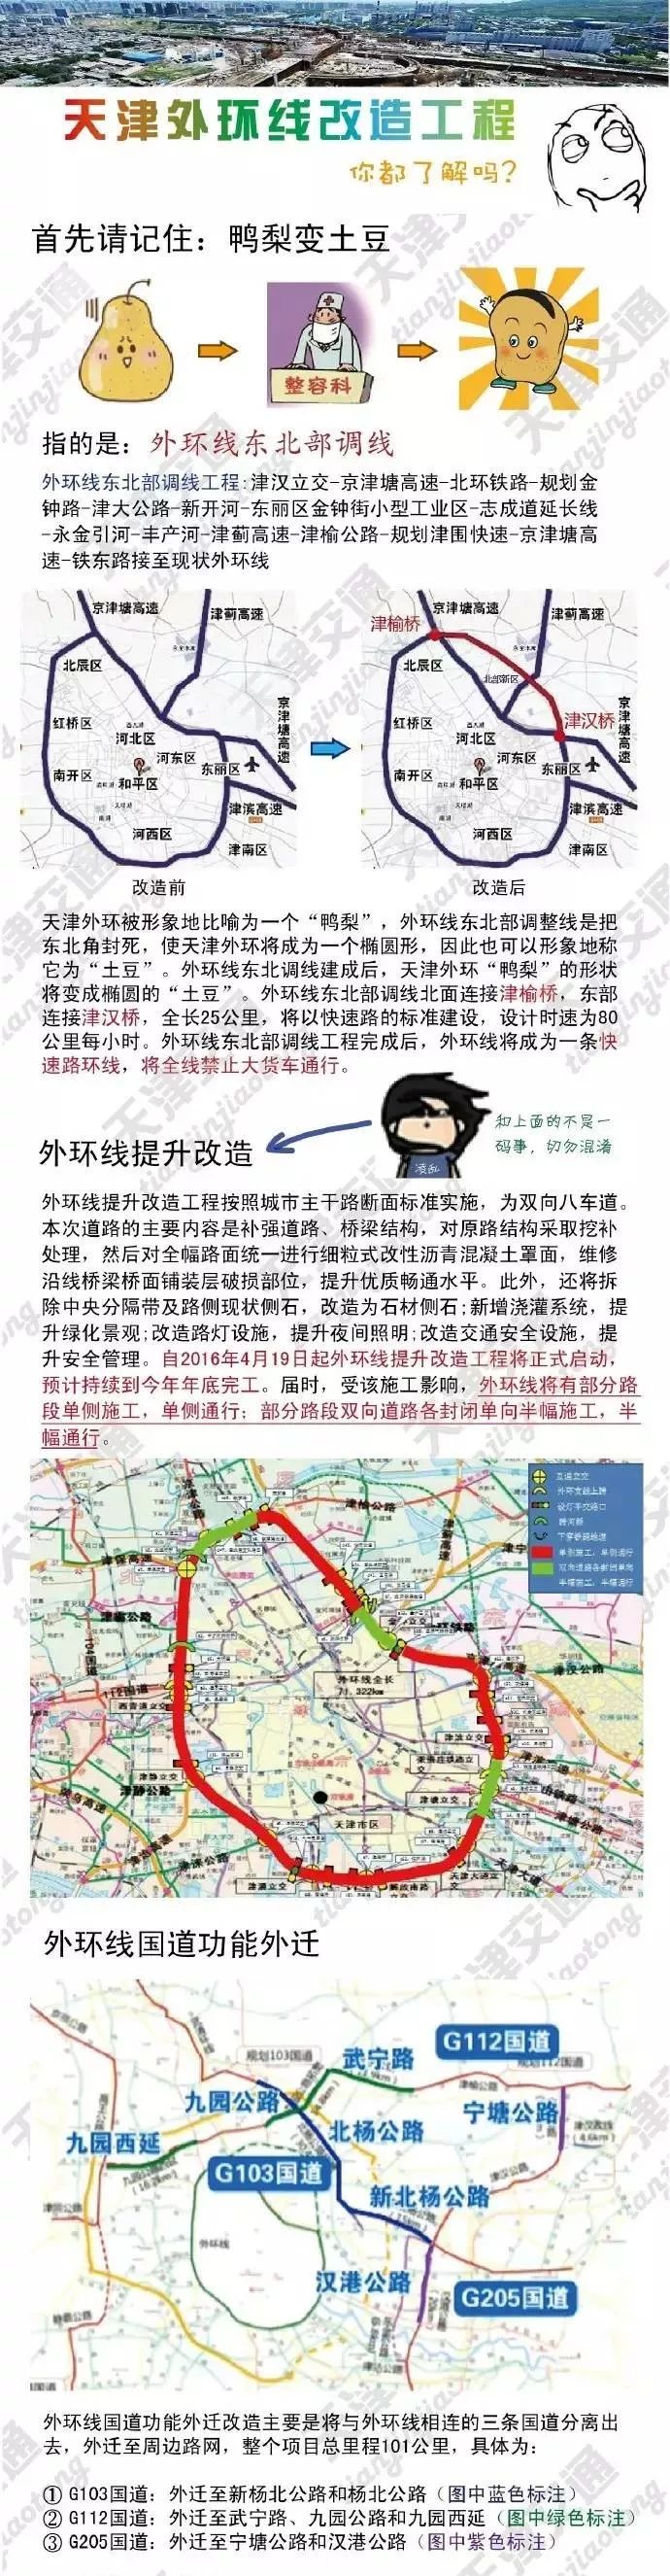 天津这个地方要建立交桥和快速路!规划公示